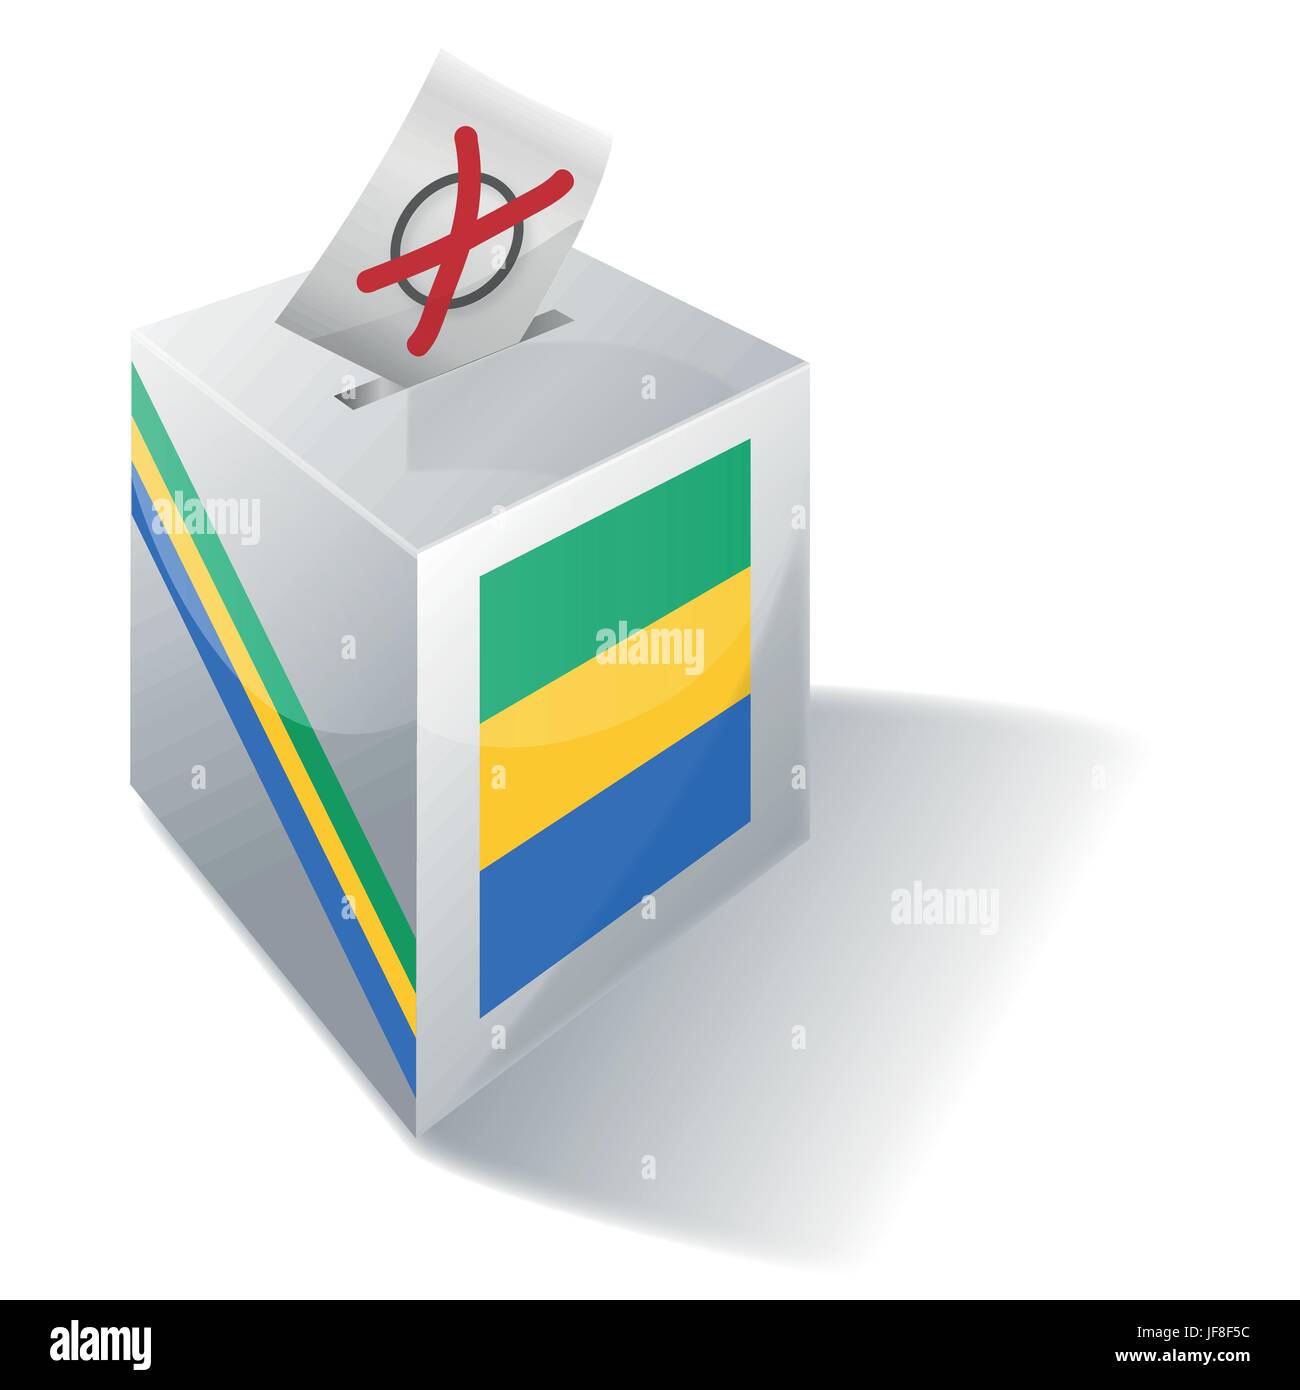 L'Afrique, vote, vote, politique, Choisir, choix, choix, élections, Gabon, Illustration de Vecteur